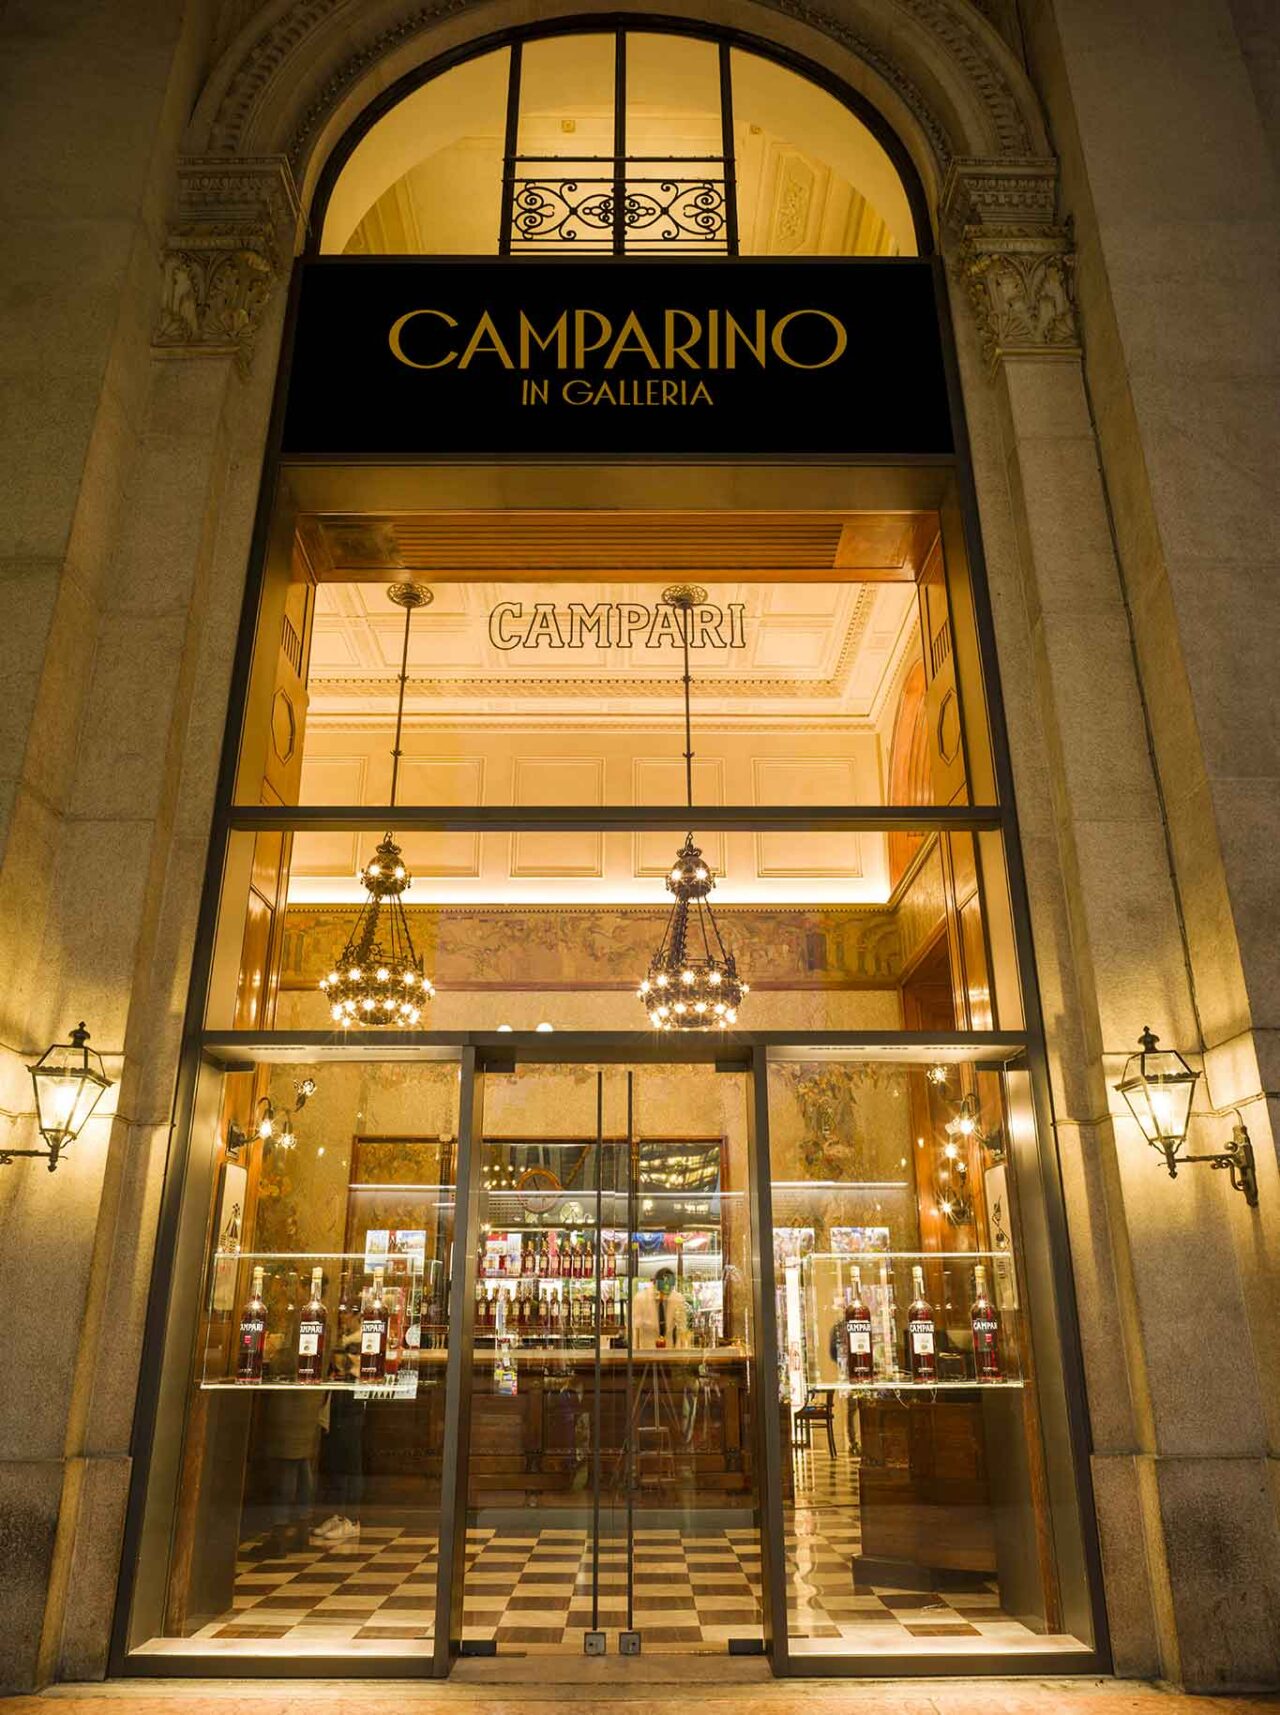 Raffinato e bellissimo anche oggi il Camparino in Galleria di Milano. Qui l’ingresso al tempio dell’aperitivo